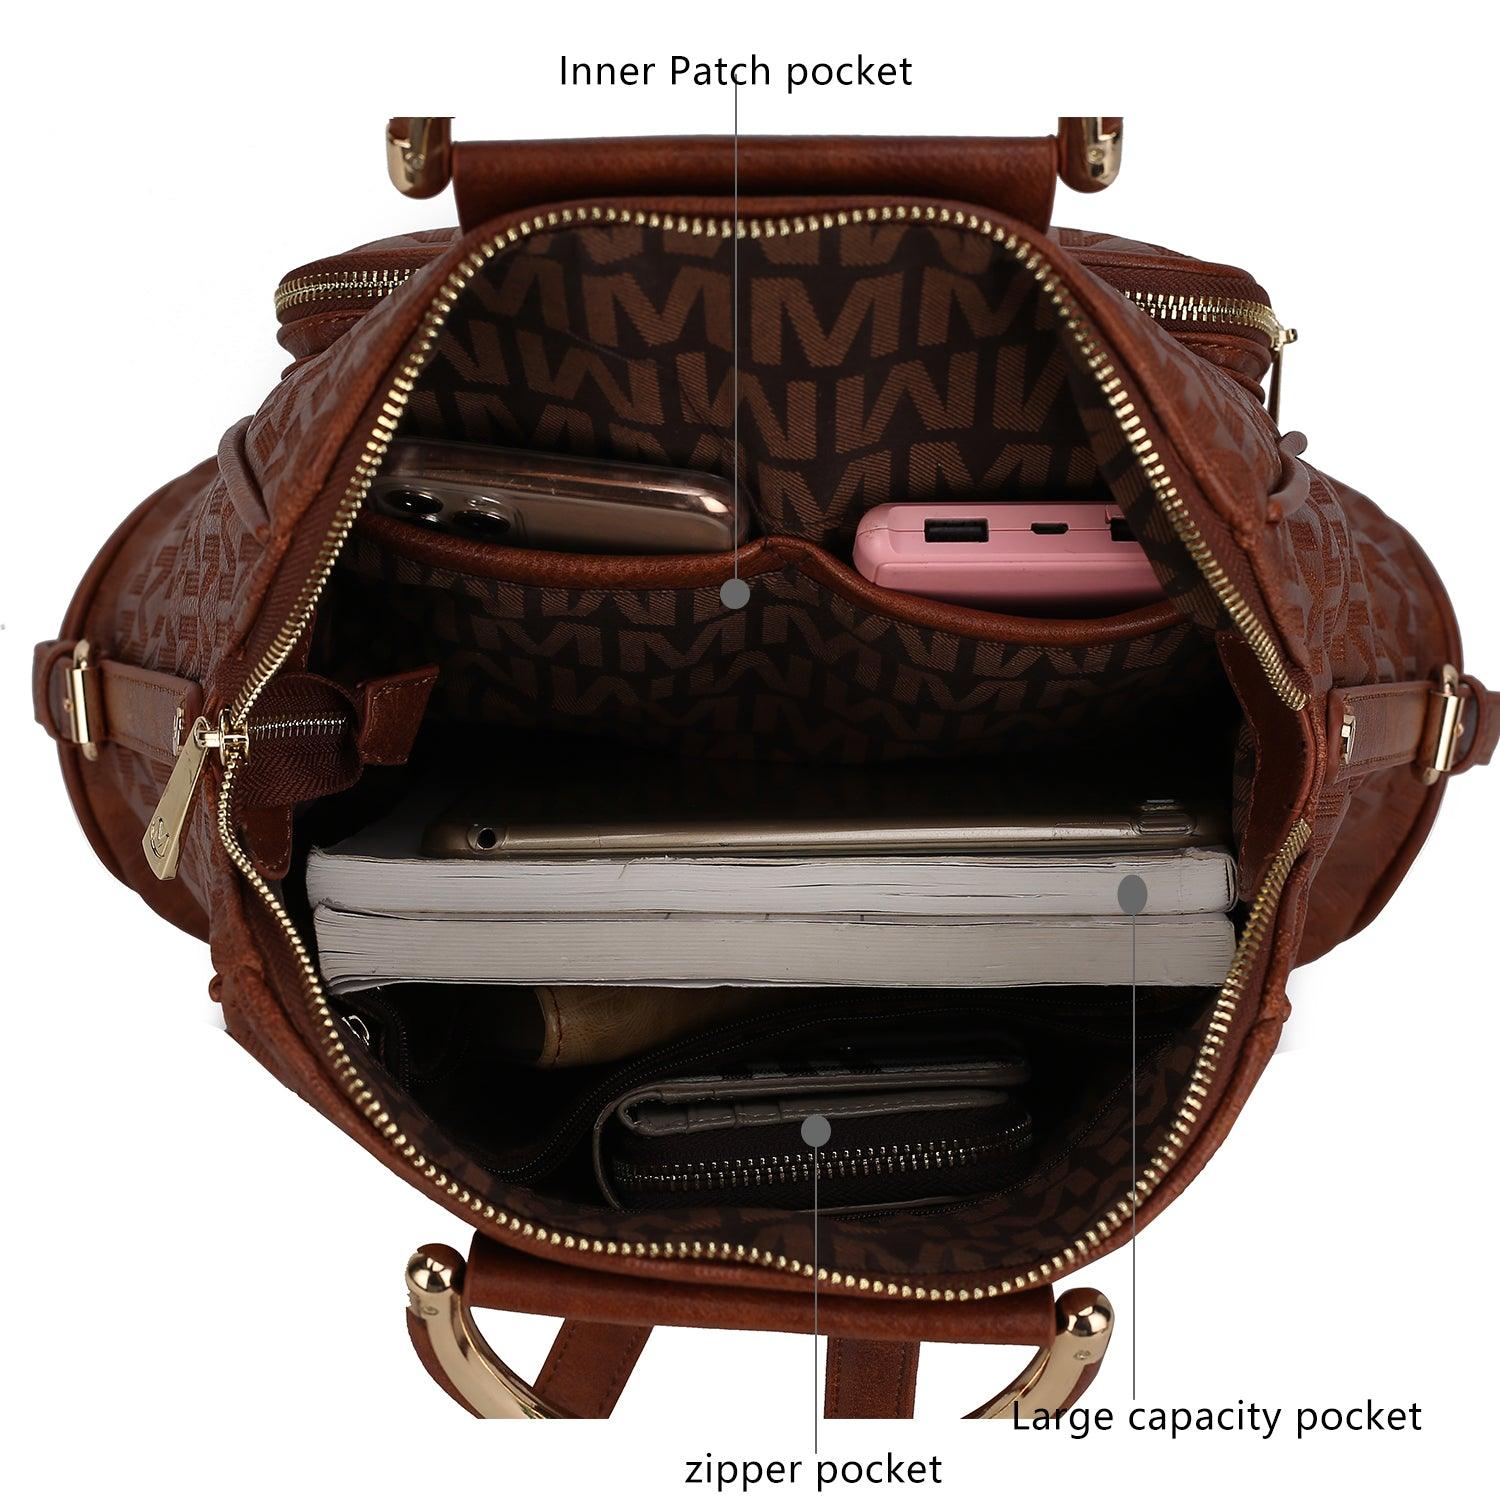 Luggage & Bags - Backpacks Torra Milan “M” Signature Trendy Backpack